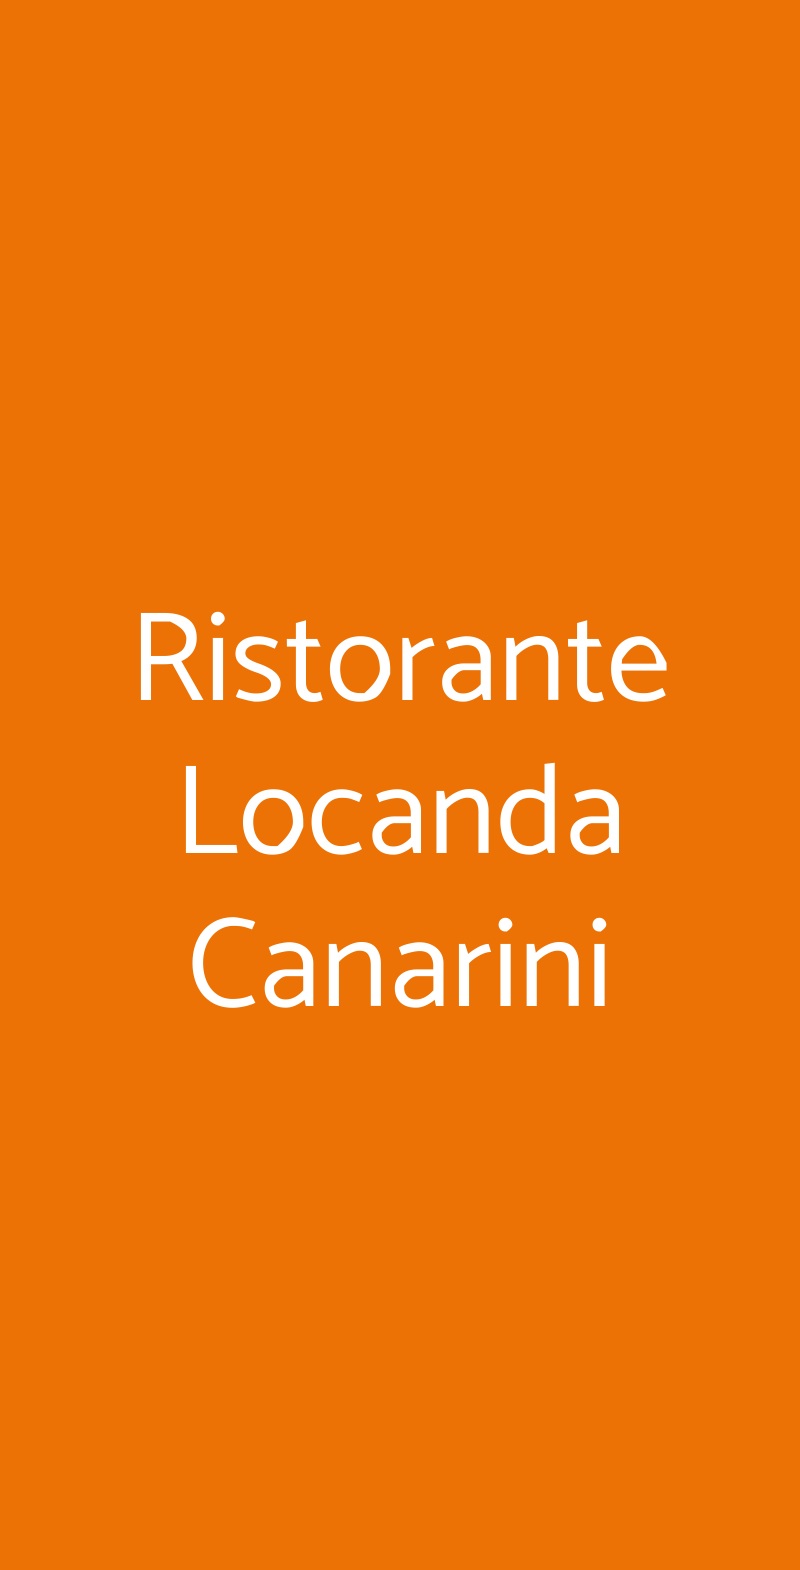 Ristorante Locanda Canarini Borgoricco menù 1 pagina